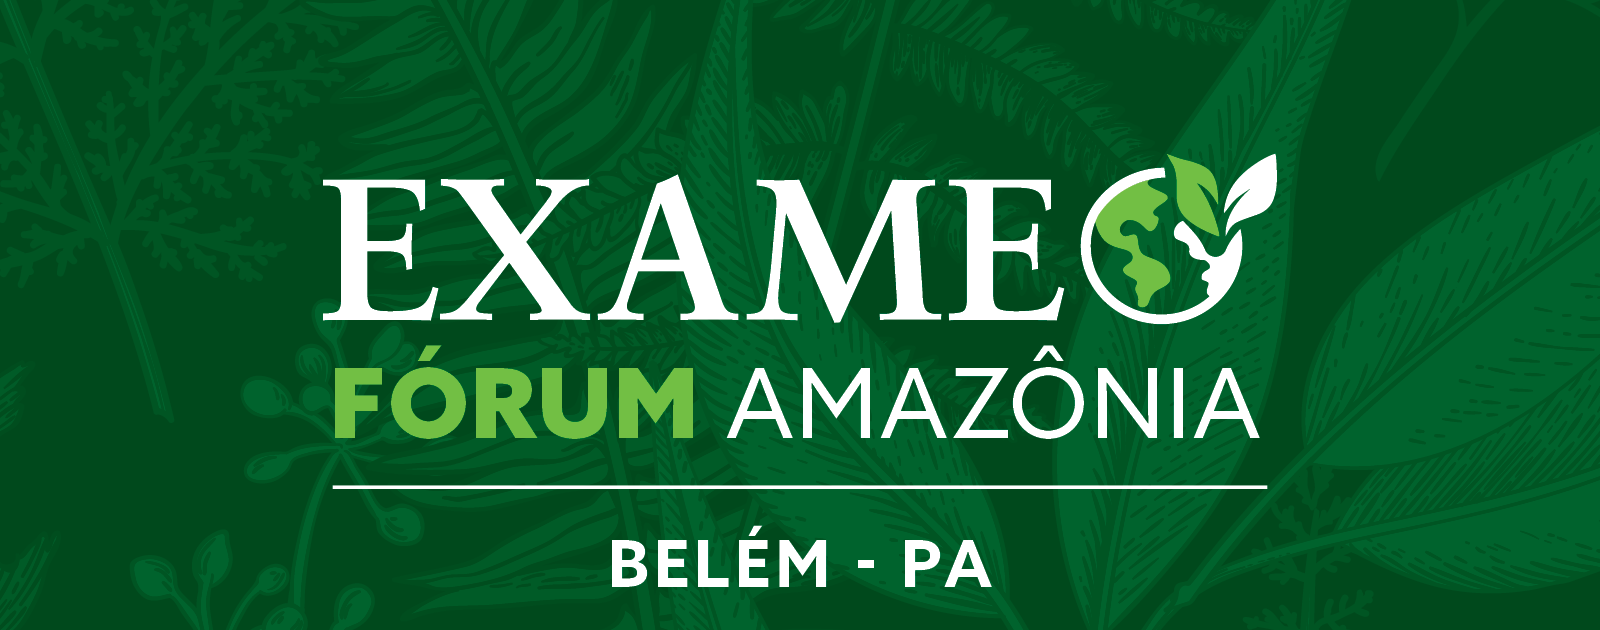 EXAME Fórum Amazônia discutirá o futuro da região nesta sexta-feira, 07/12, em Belém